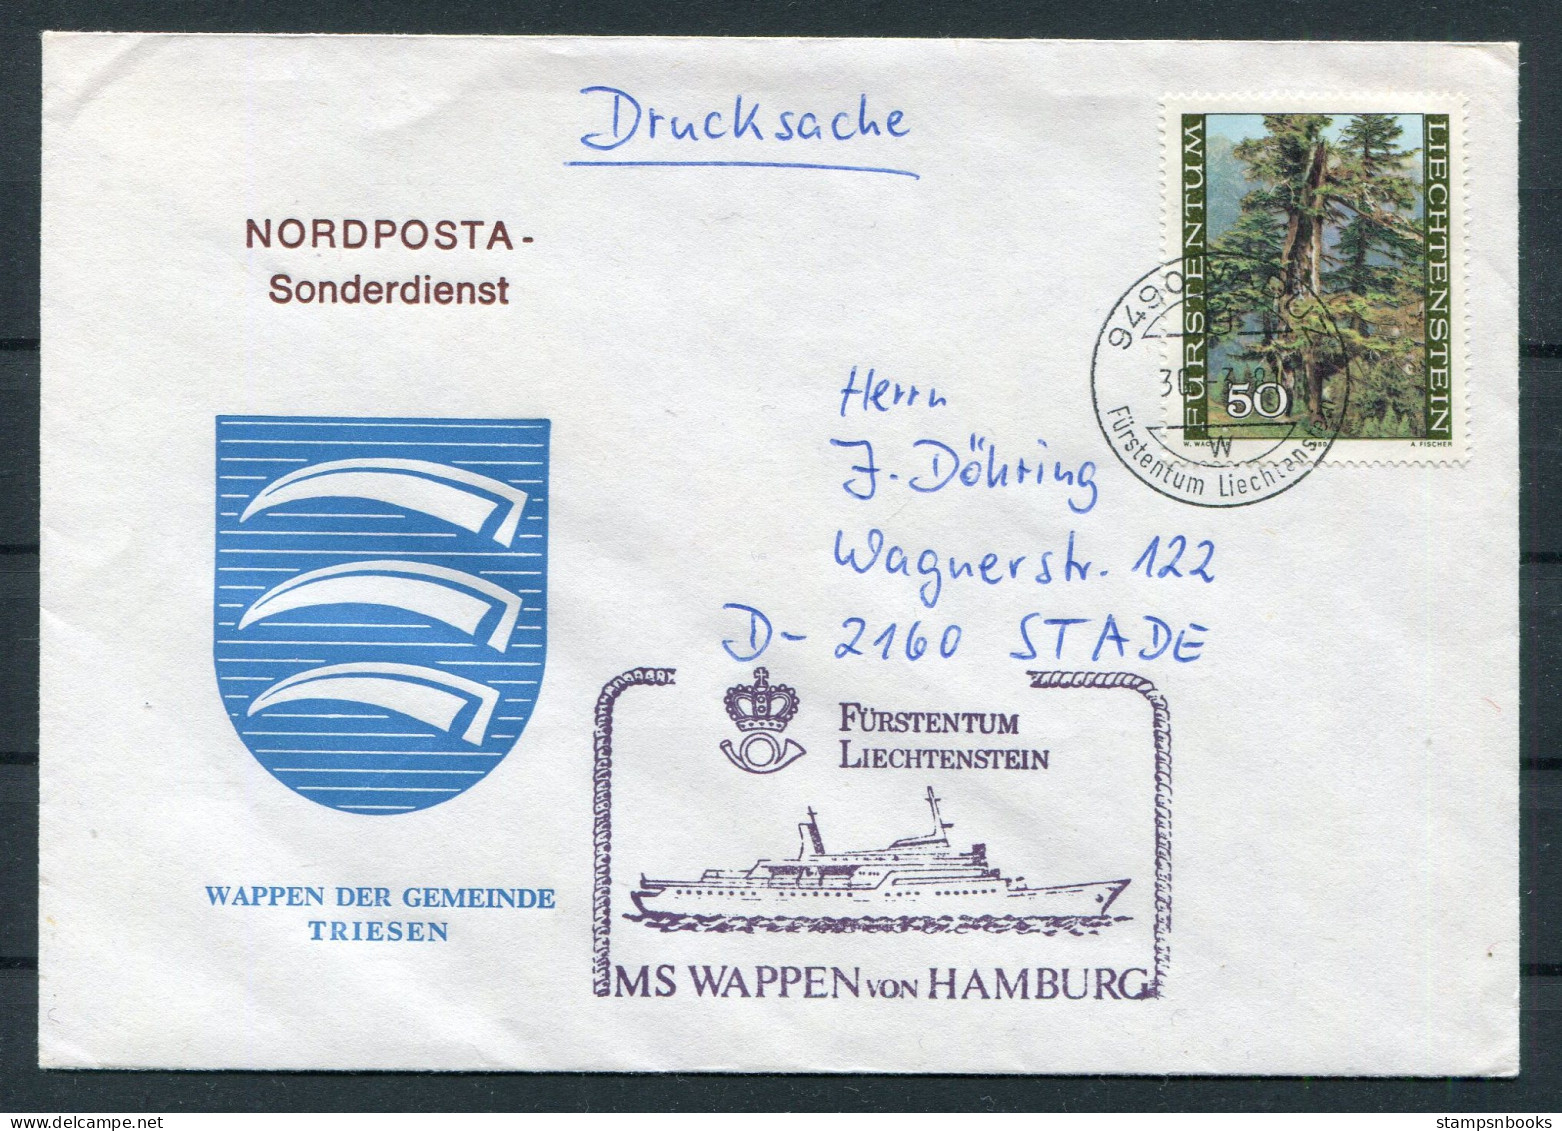 1981 Liechtenstein Vaduz Trees MS WAPPEN VON HAMBURG Ship Cover. Wappen Der Gemeinde TRIESEN Coat-of-Arms - Storia Postale